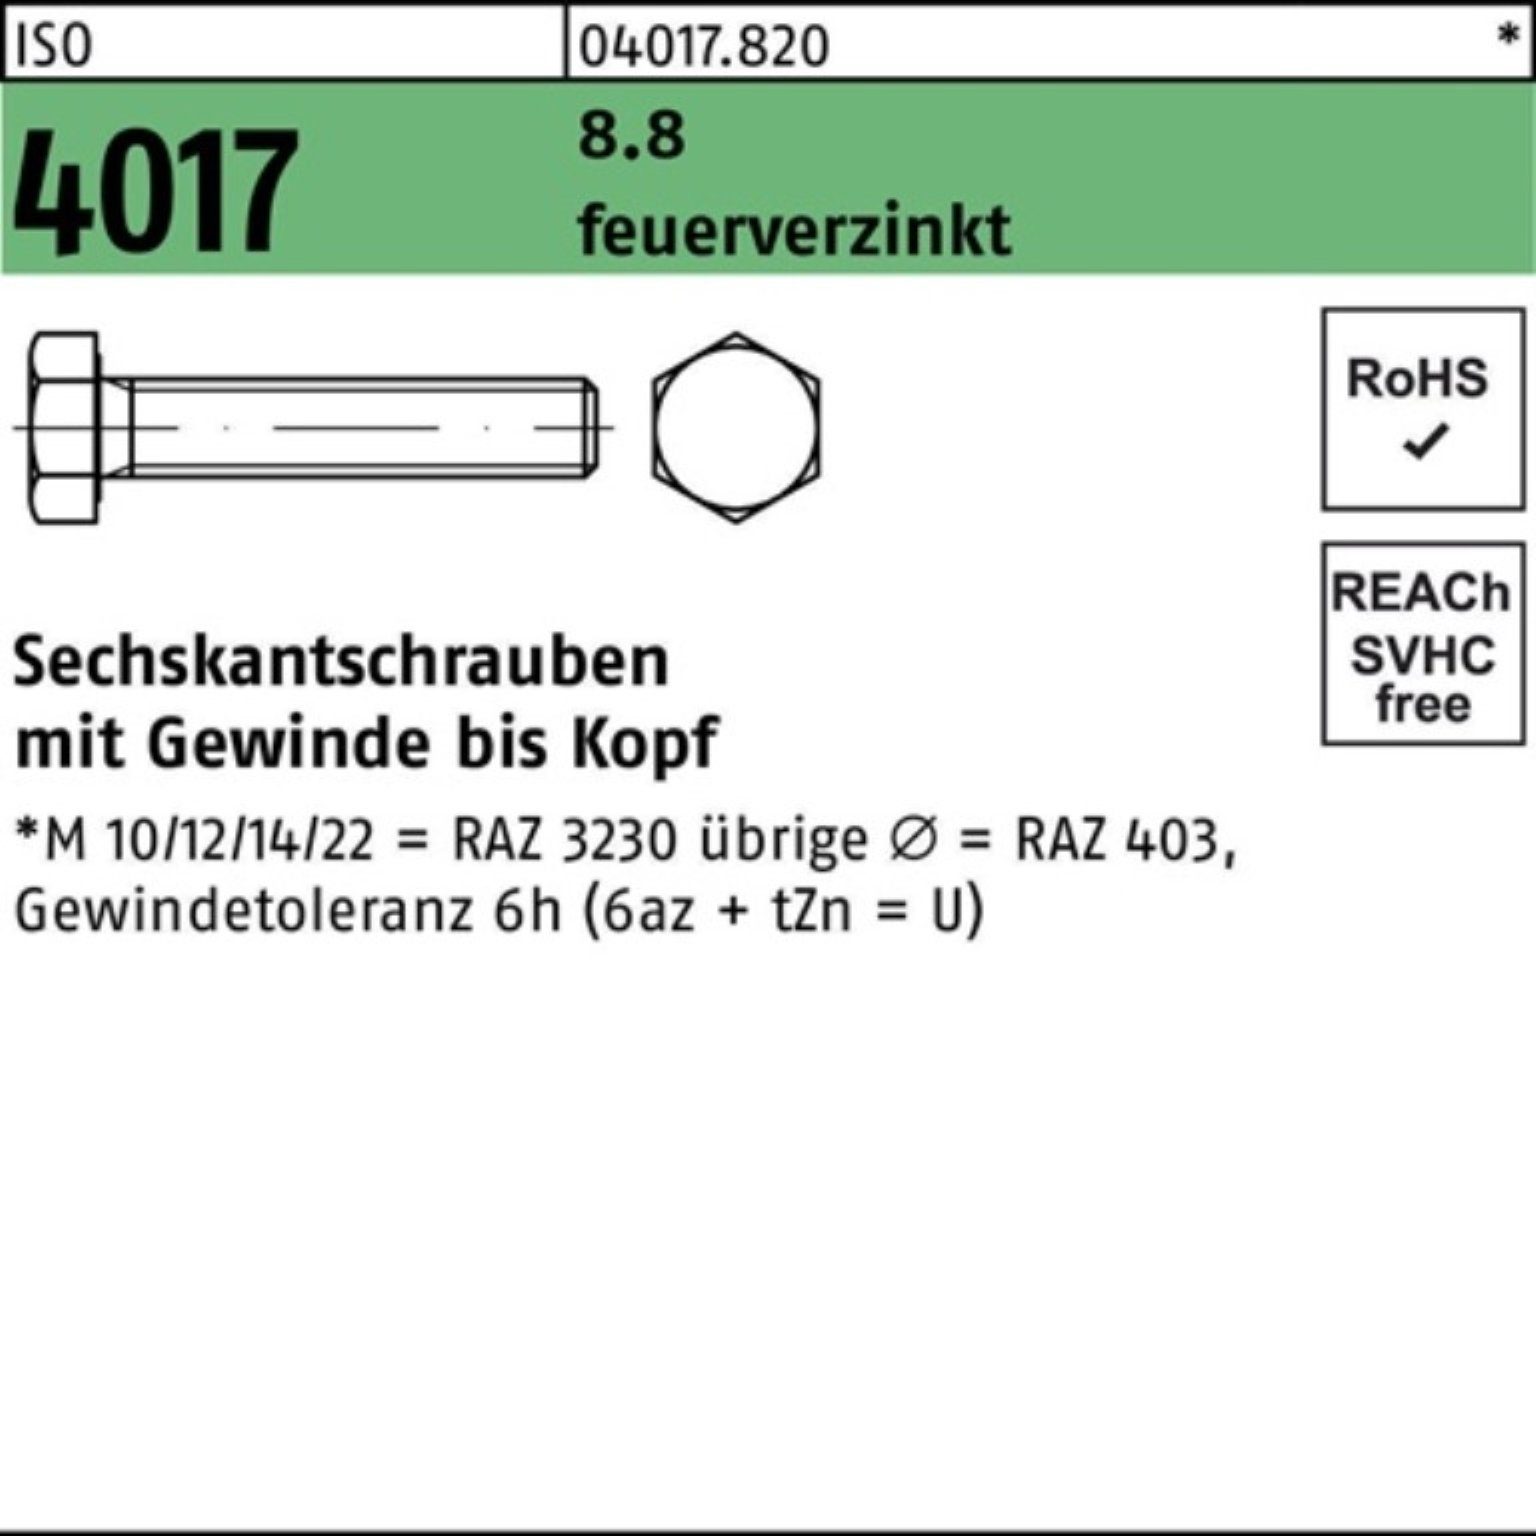 VG Sechskantschraube St feuerverz. 70 ISO 8.8 Bufab 4017 50 100er Pack M12x Sechskantschraube